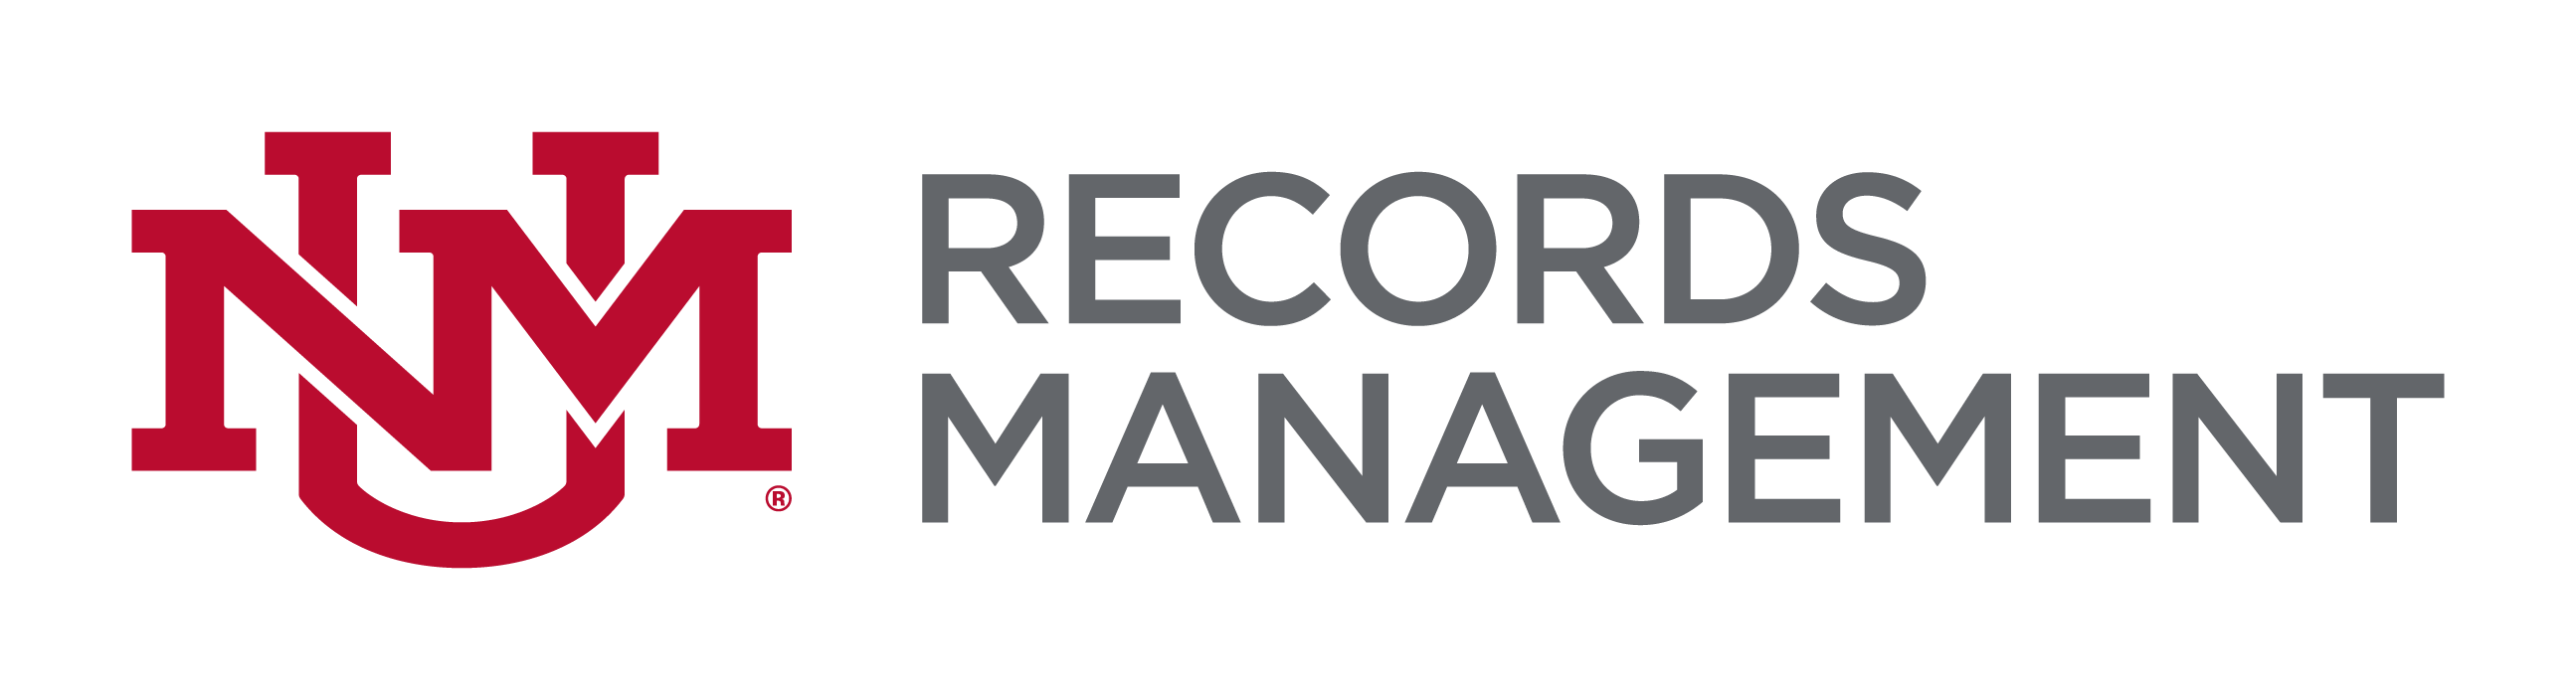 UNM Records Management